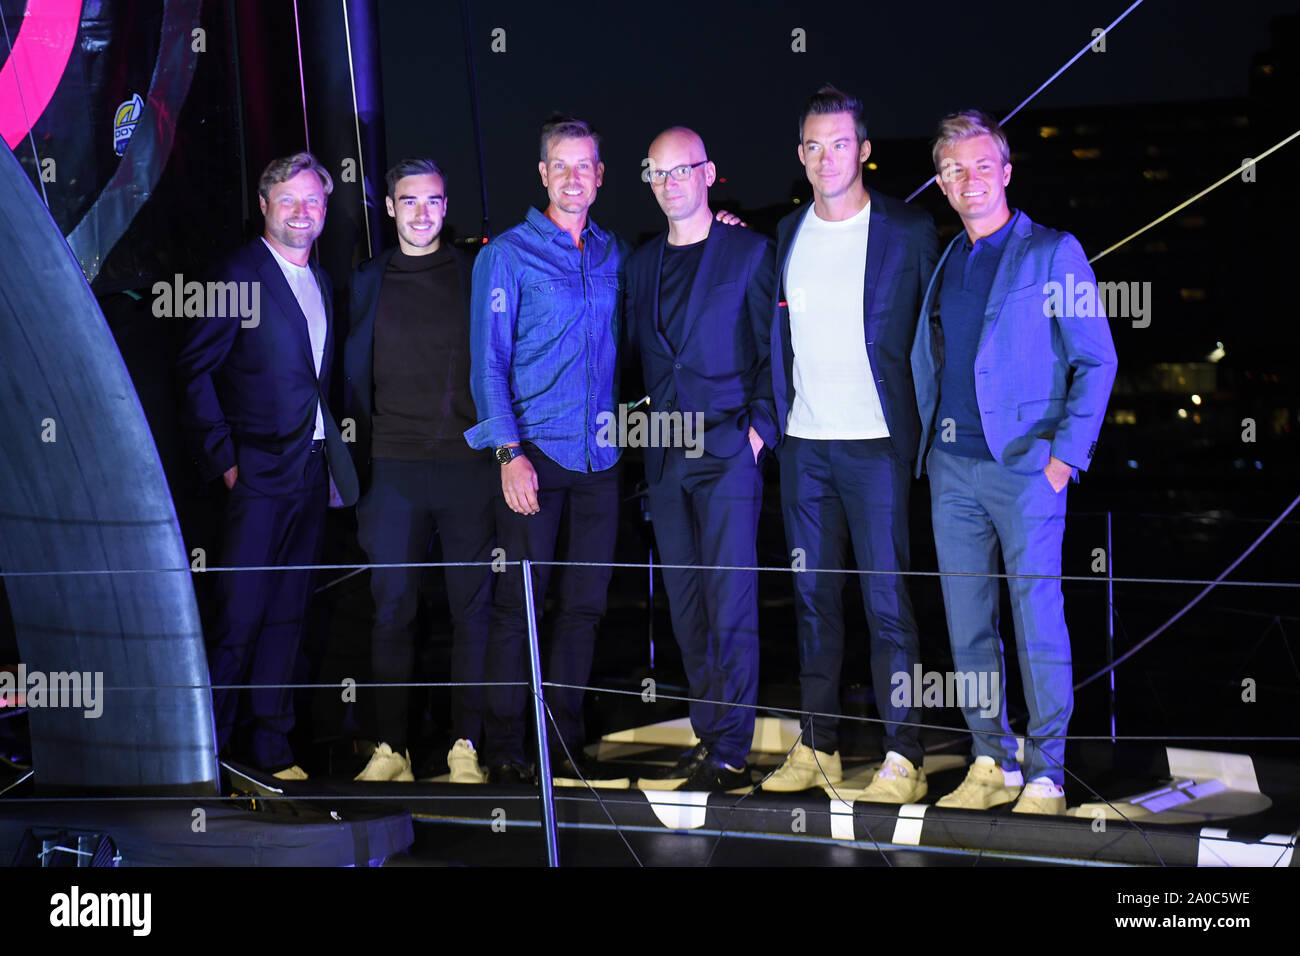 (De gauche à droite) Alex Thomson, Harry Winks, Henrik Stenson, Hugo Boss PDG Mark Langer, Andre Lotterer et Nico Rosberg à la cérémonie de baptême pour le yacht Hugo Boss à Londres. Banque D'Images